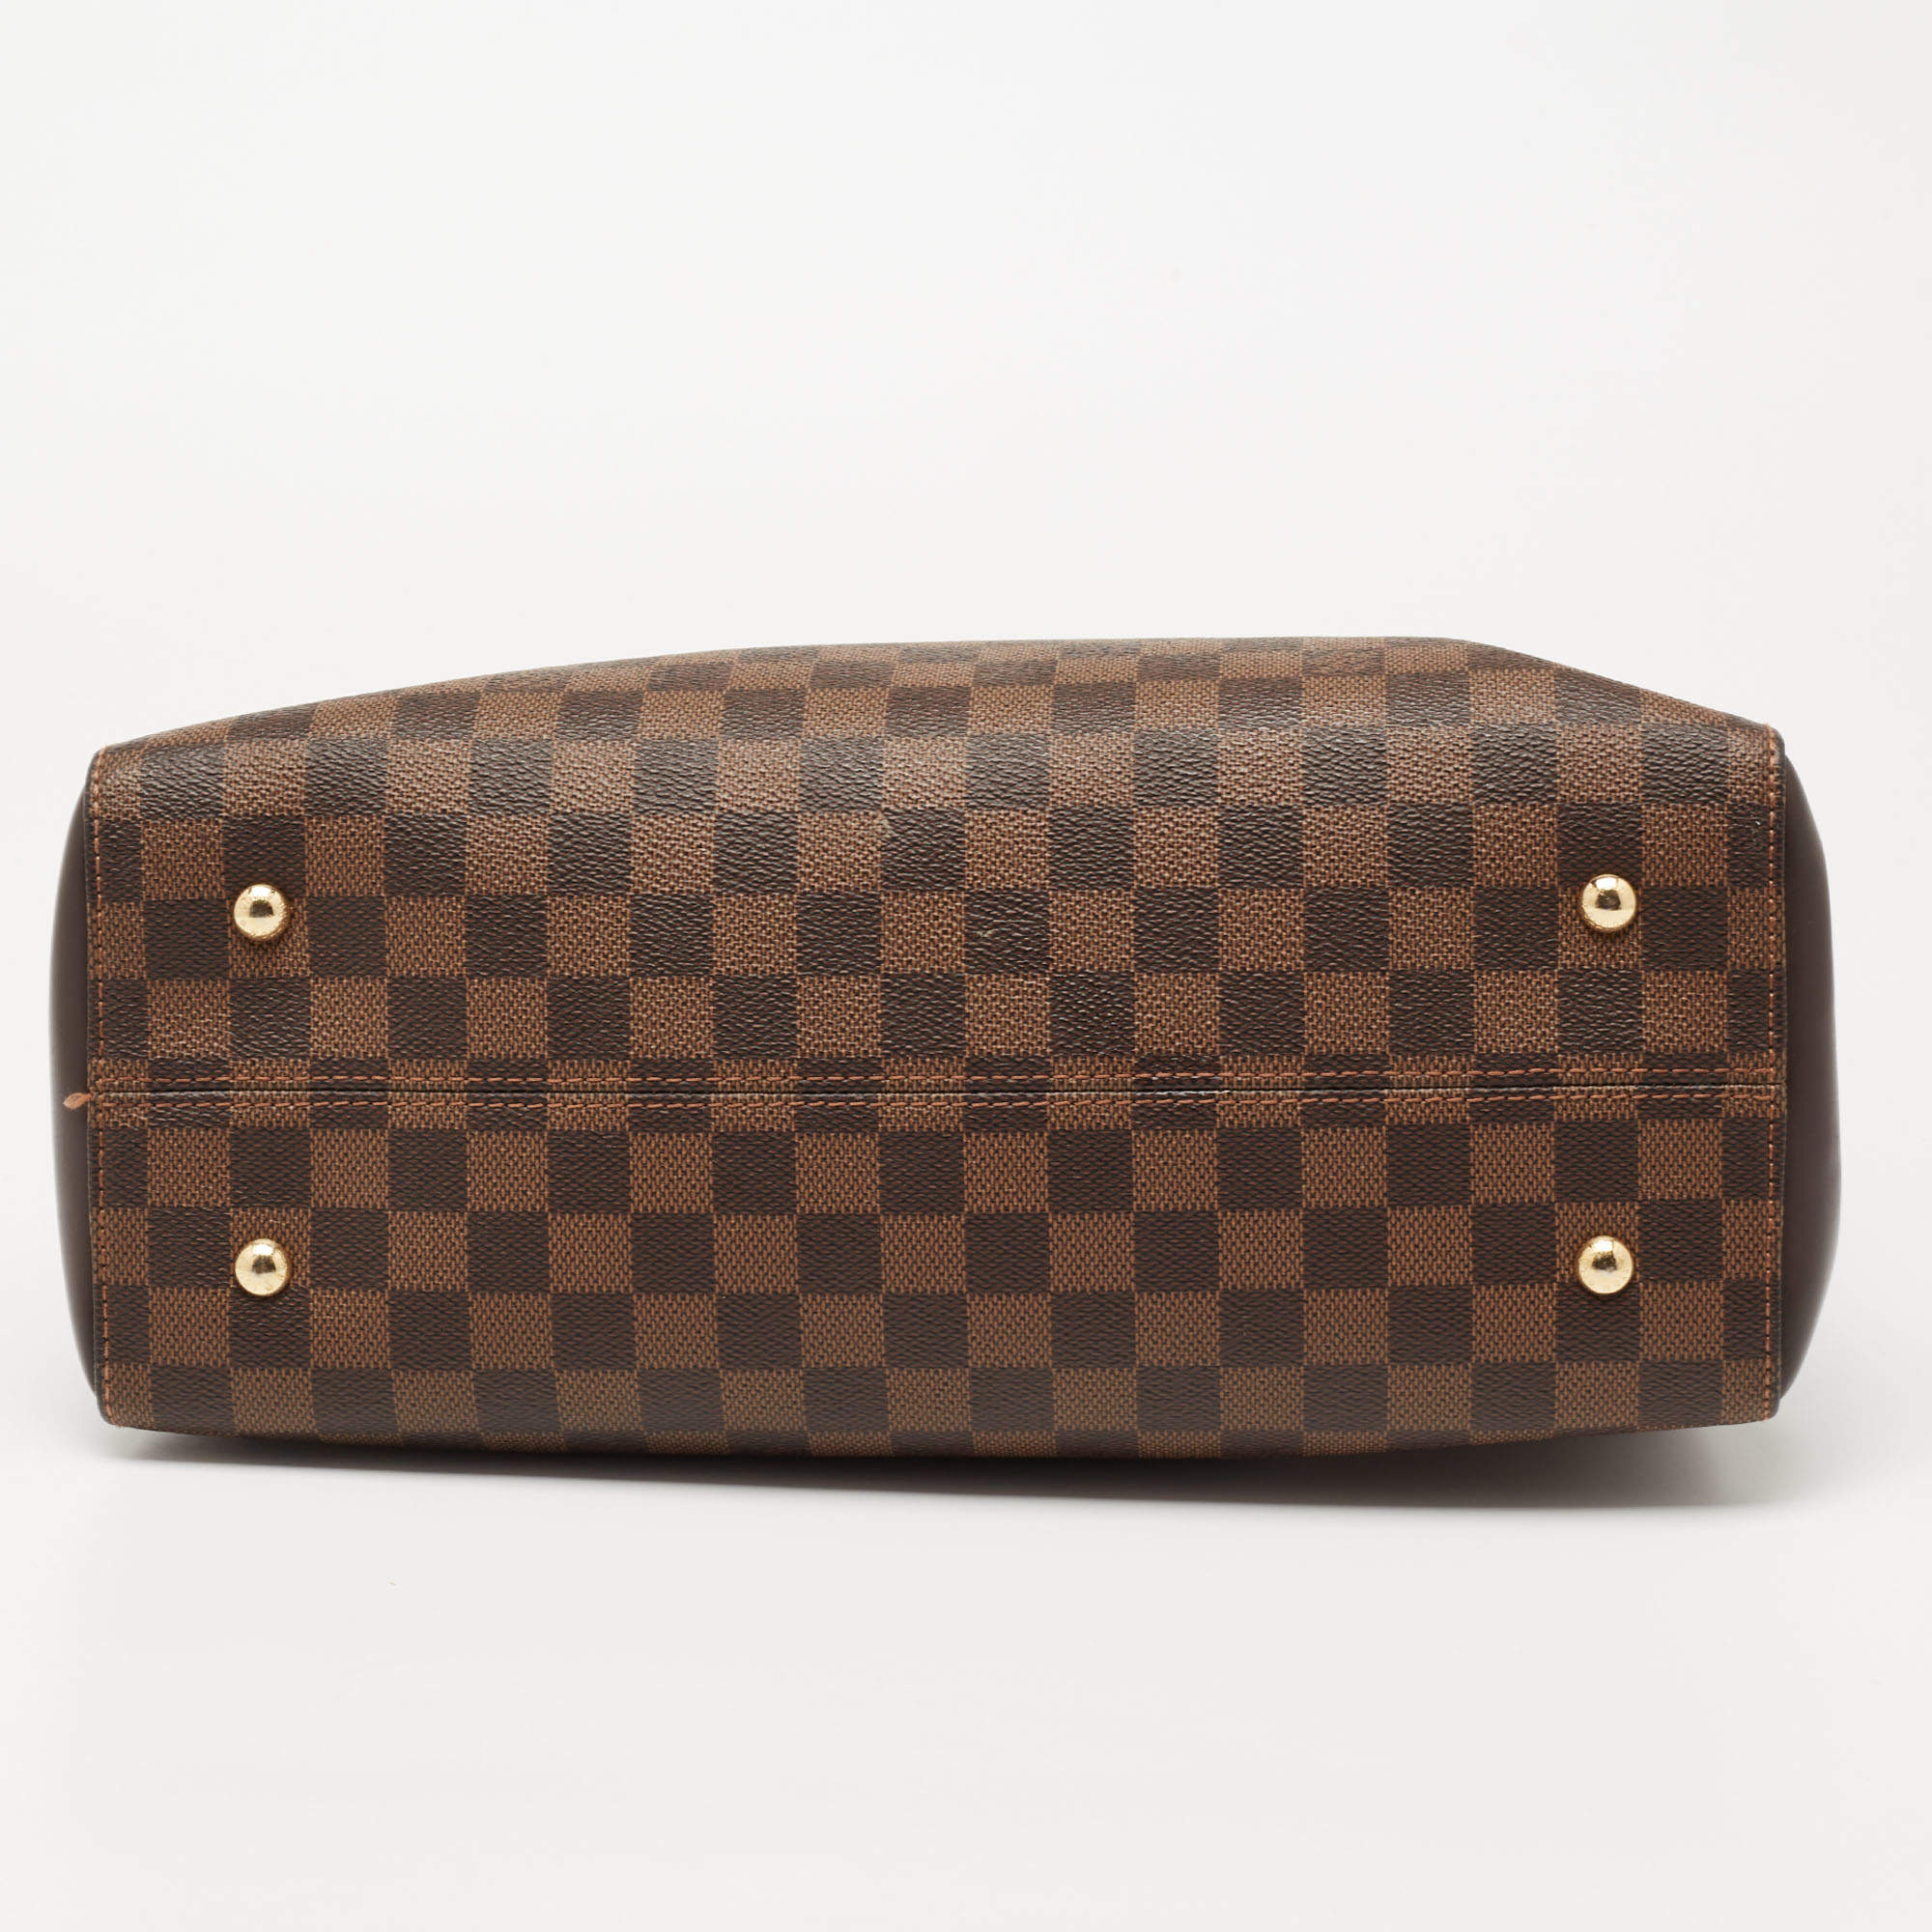 Authenticated Used LOUIS VUITTON Louis Vuitton Kensington bowling handbag  N41505 Damier canvas leather Ebene